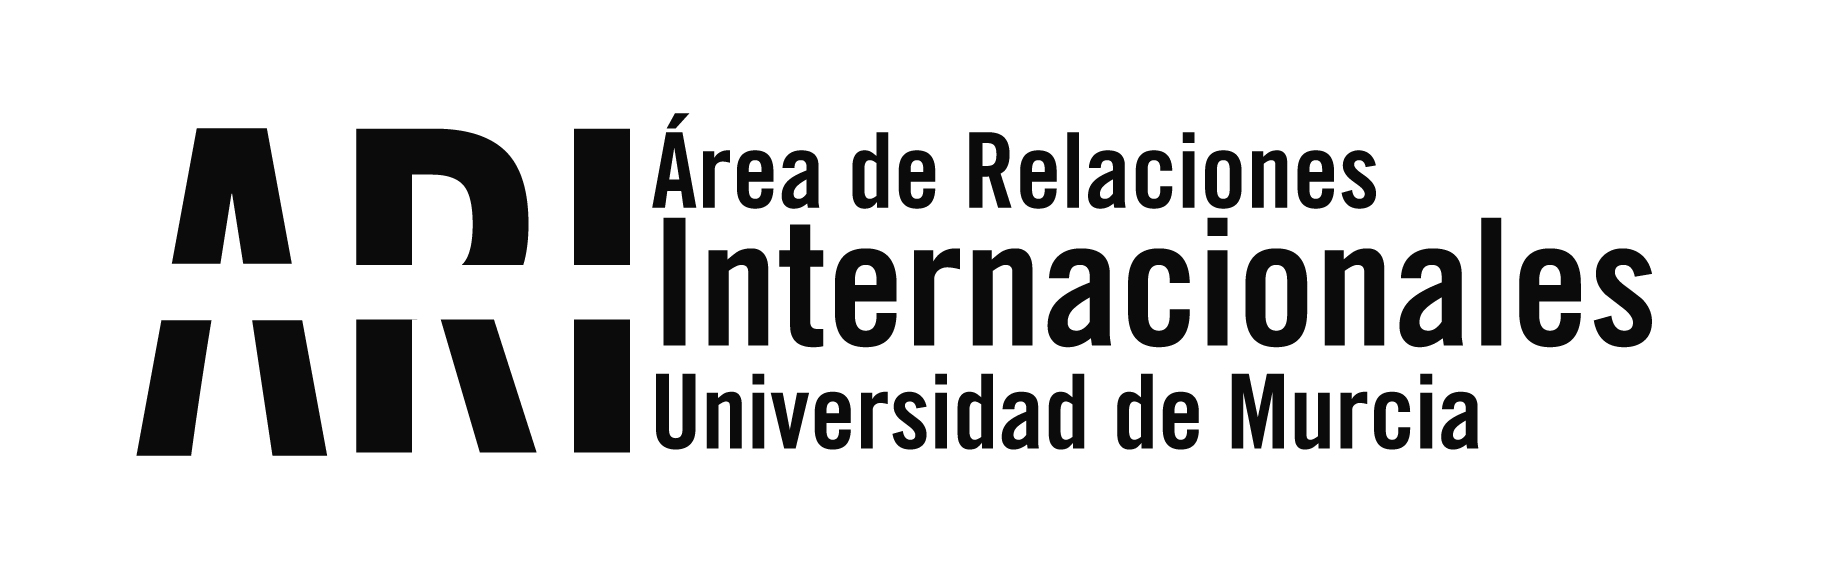 131 estudiantes de la Universidad de Murcia podrán cursar estudios en Latinoamérica el próximo curso - Área de Relaciones Internacionales